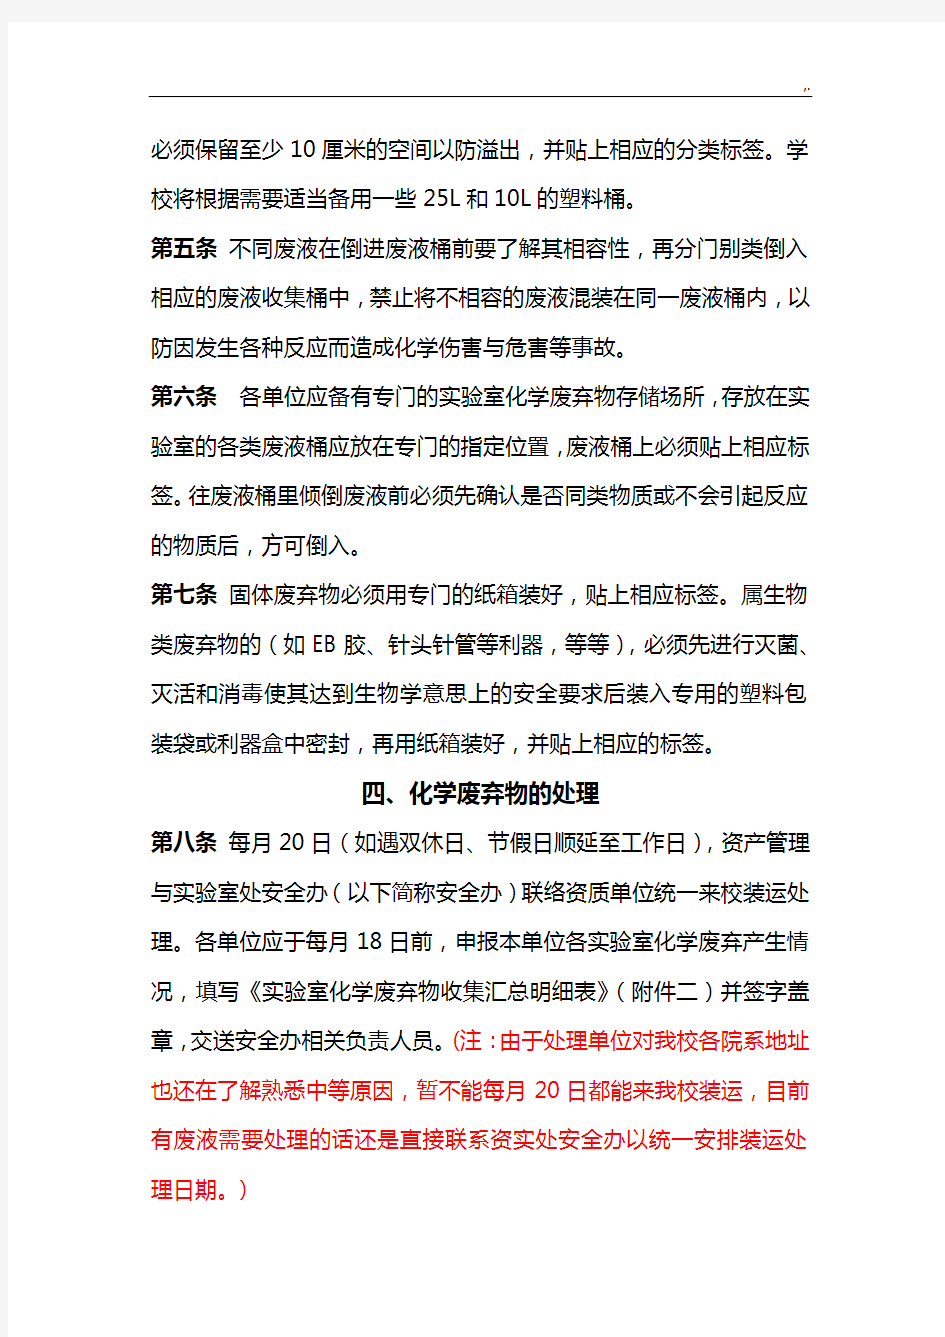 上海交大实验室化学废弃物收集管理方案计划规定